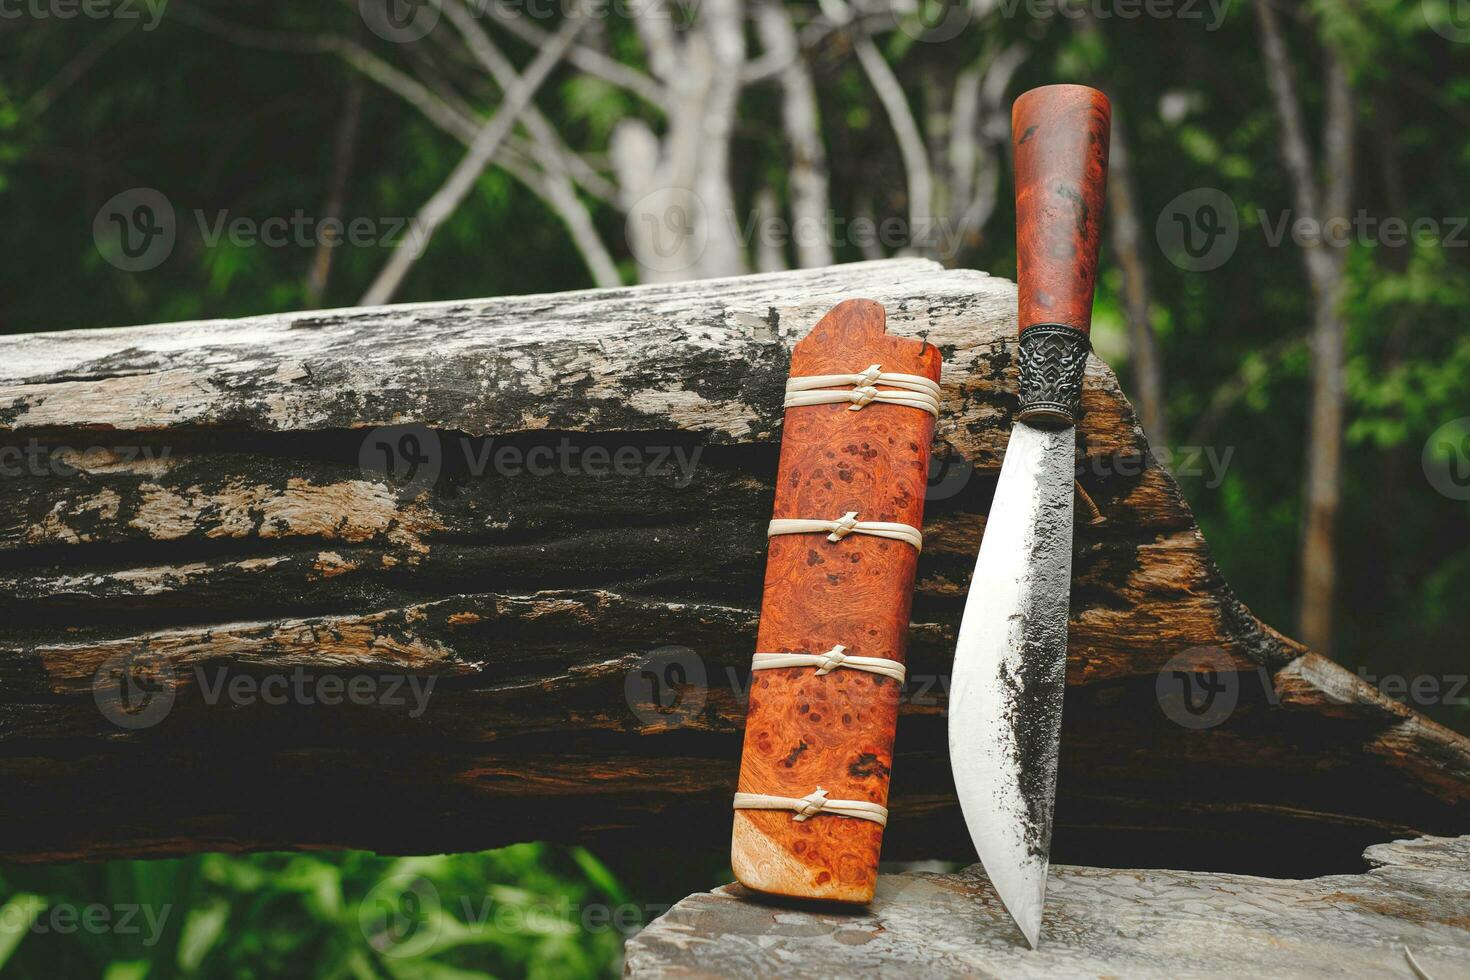 e-nep couteau thaïlandais originaire de des couteaux pour survie dans le forêt sur un vieux Charpente en bois photo